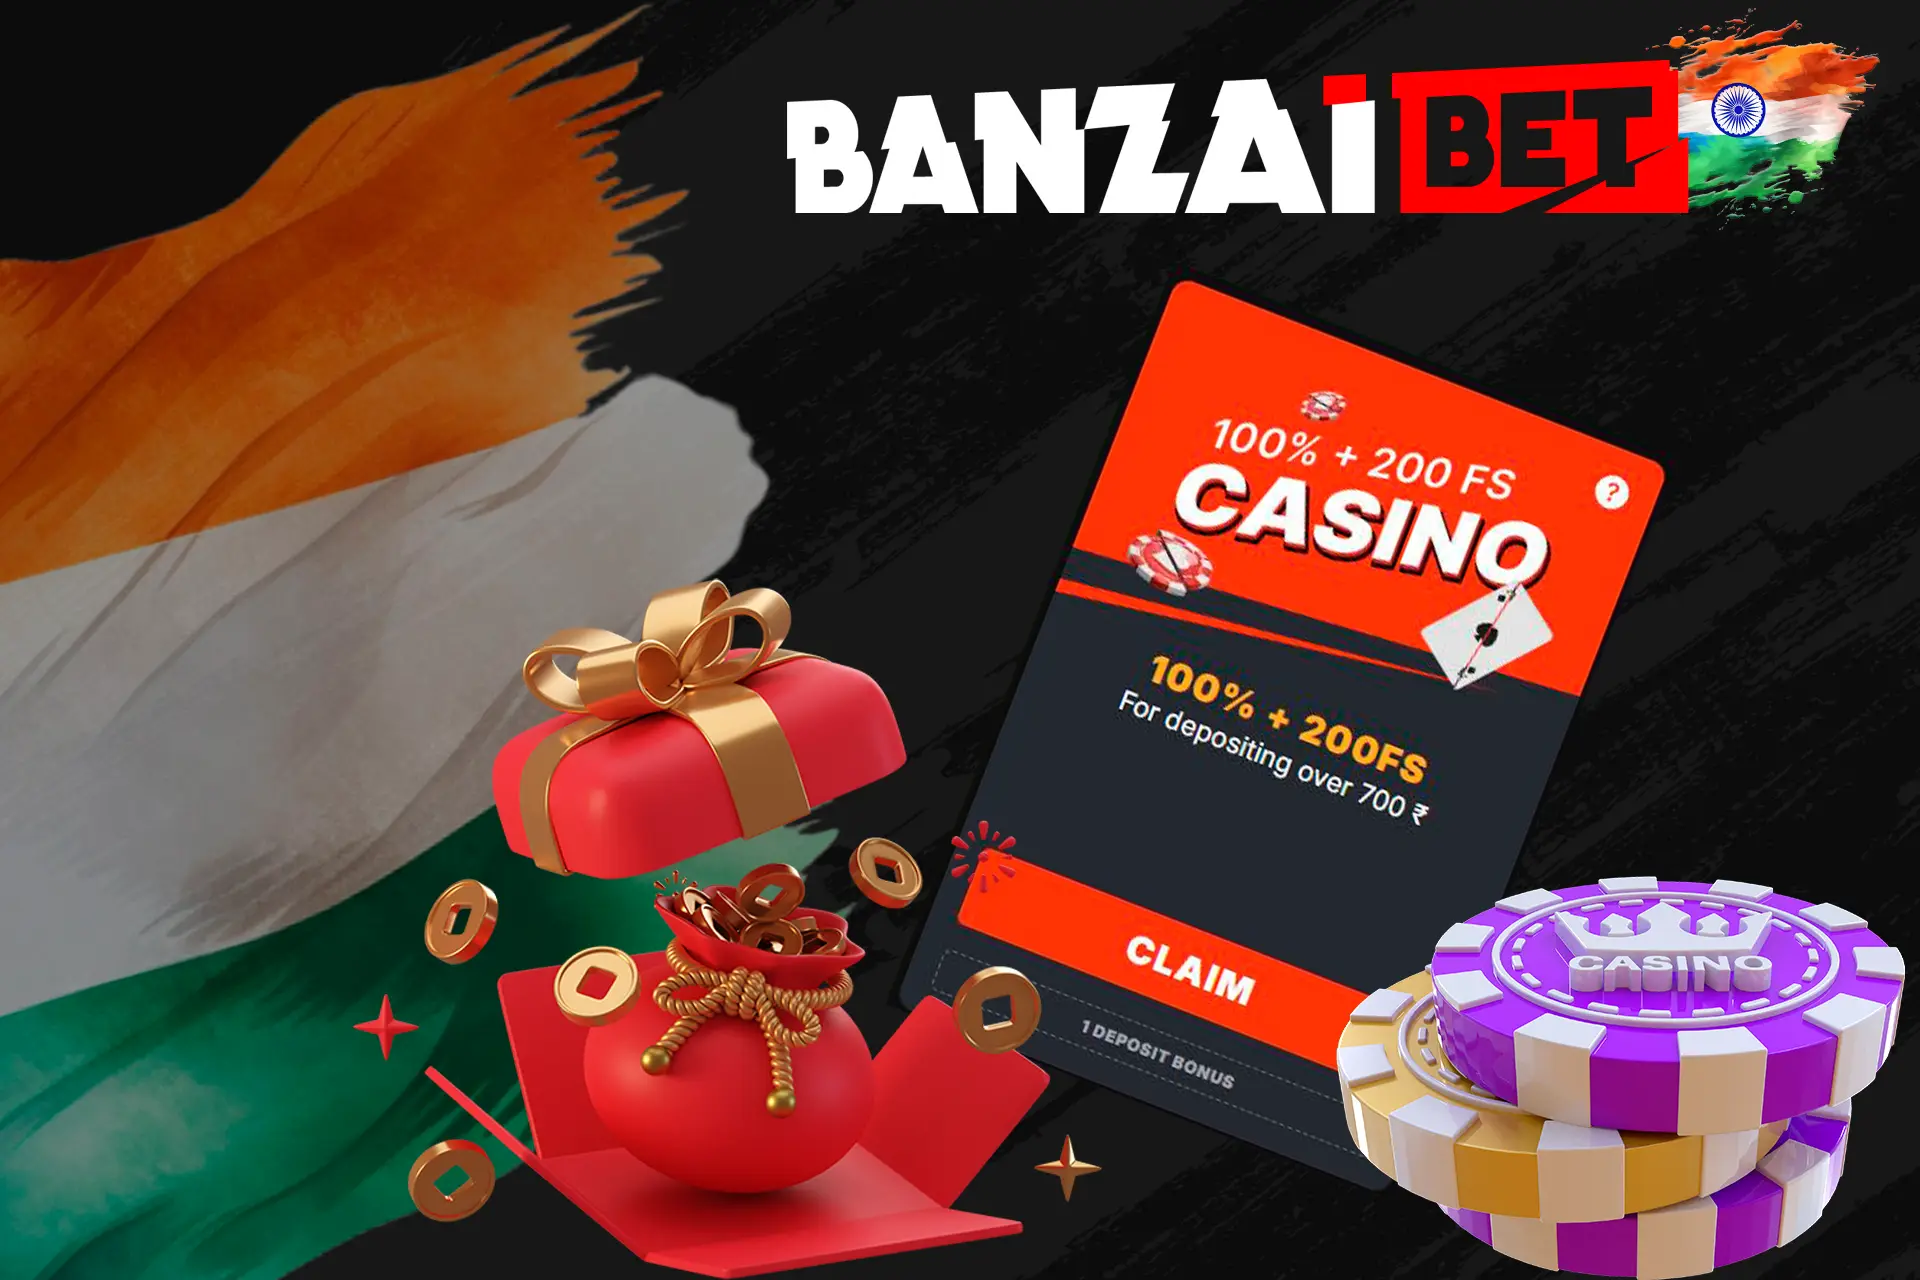 Check out the main bonus at Banzaibet India Casino